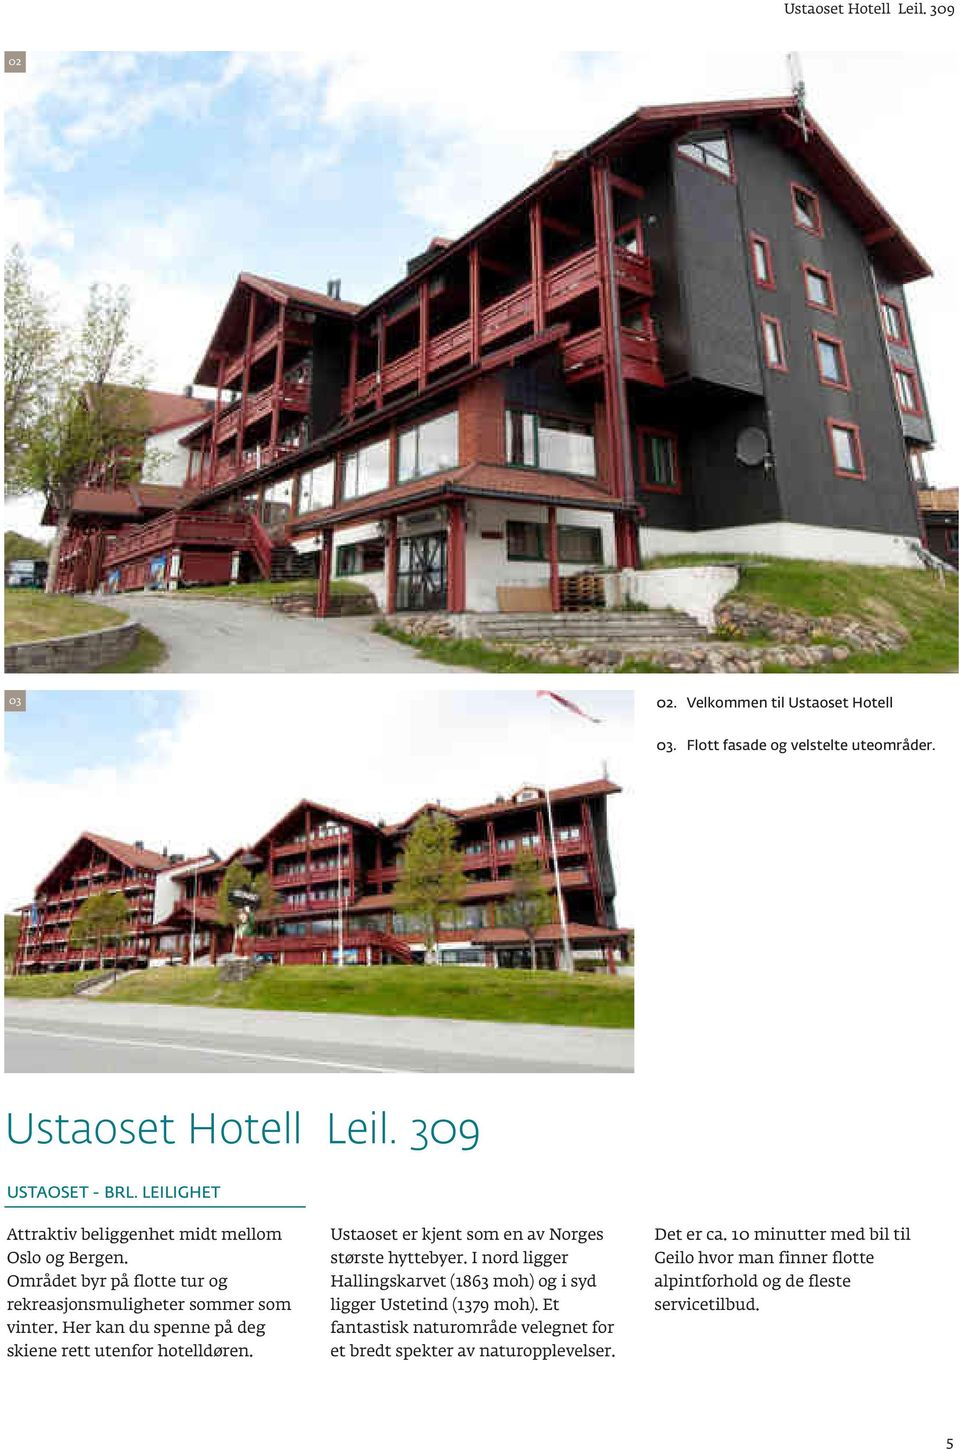 Her kan du spenne på deg skiene rett utenfor hotelldøren. Ustaoset er kjent som en av Norges største hyttebyer.